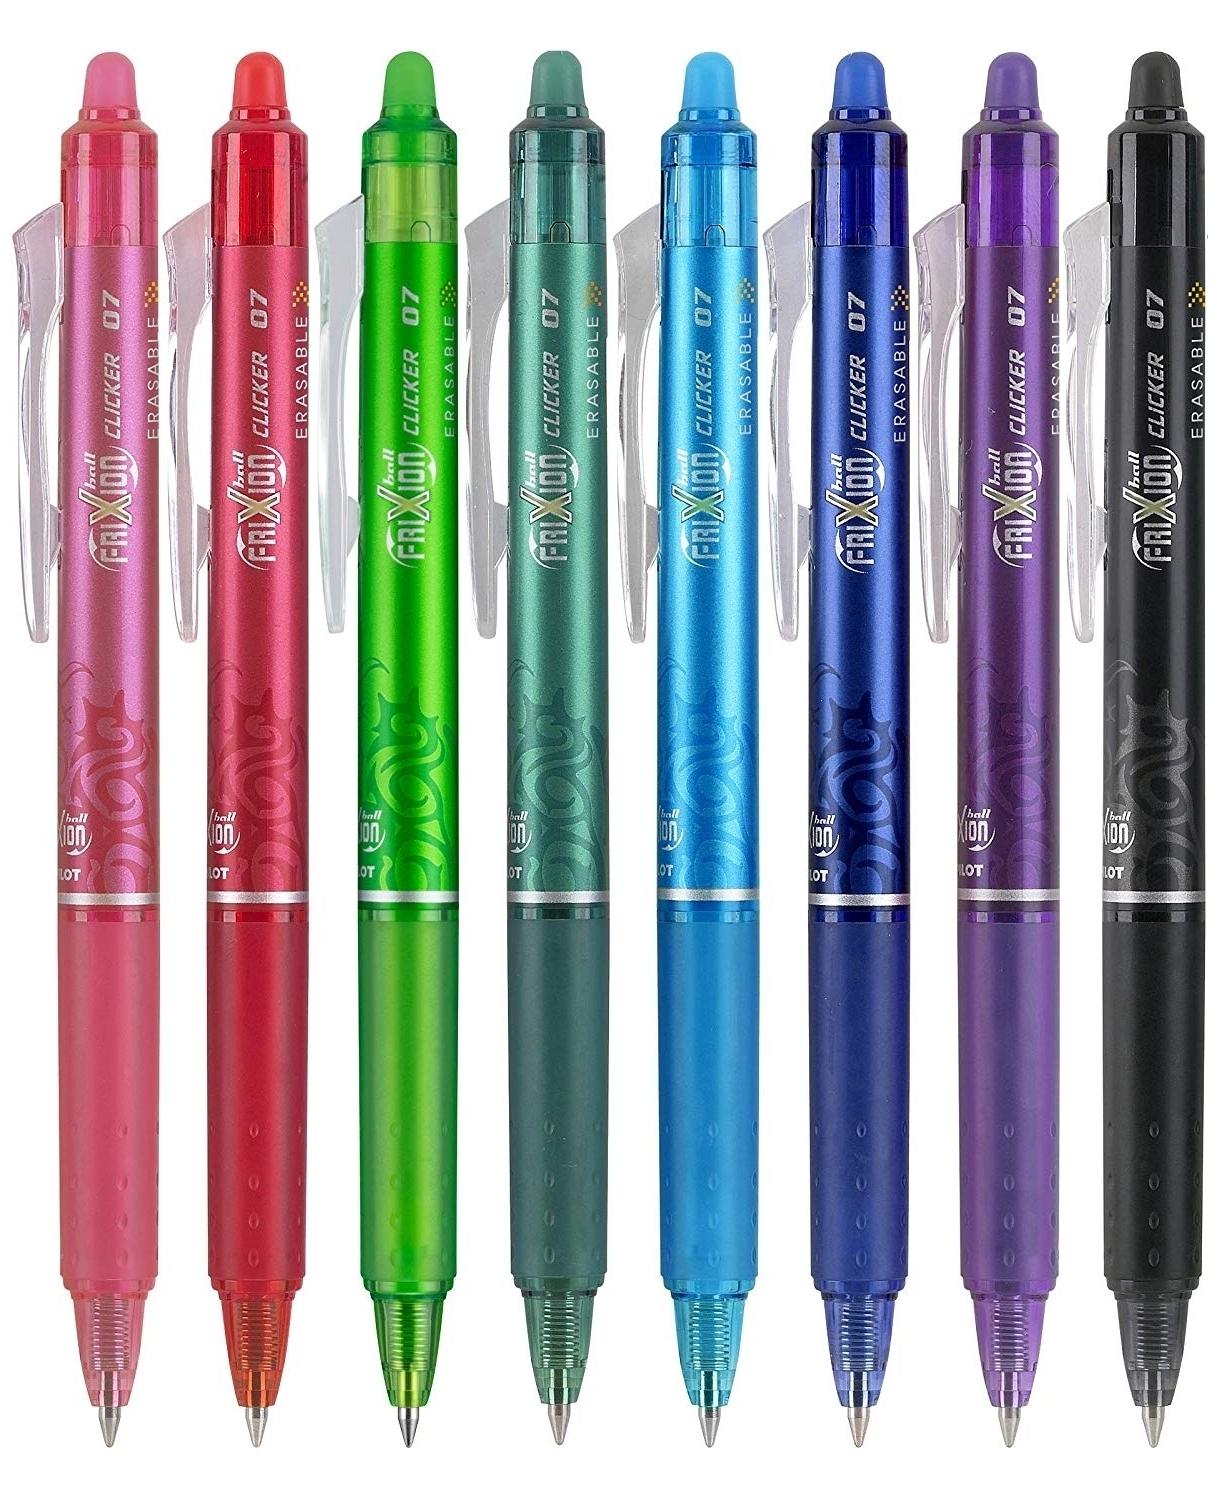 Pilot Frixion - Bolígrafos borrables de tinta de gel de 0.5 bolas  retráctiles, punta extrafina, barril blanco, tinta negra, paquete de 3  bolígrafos y